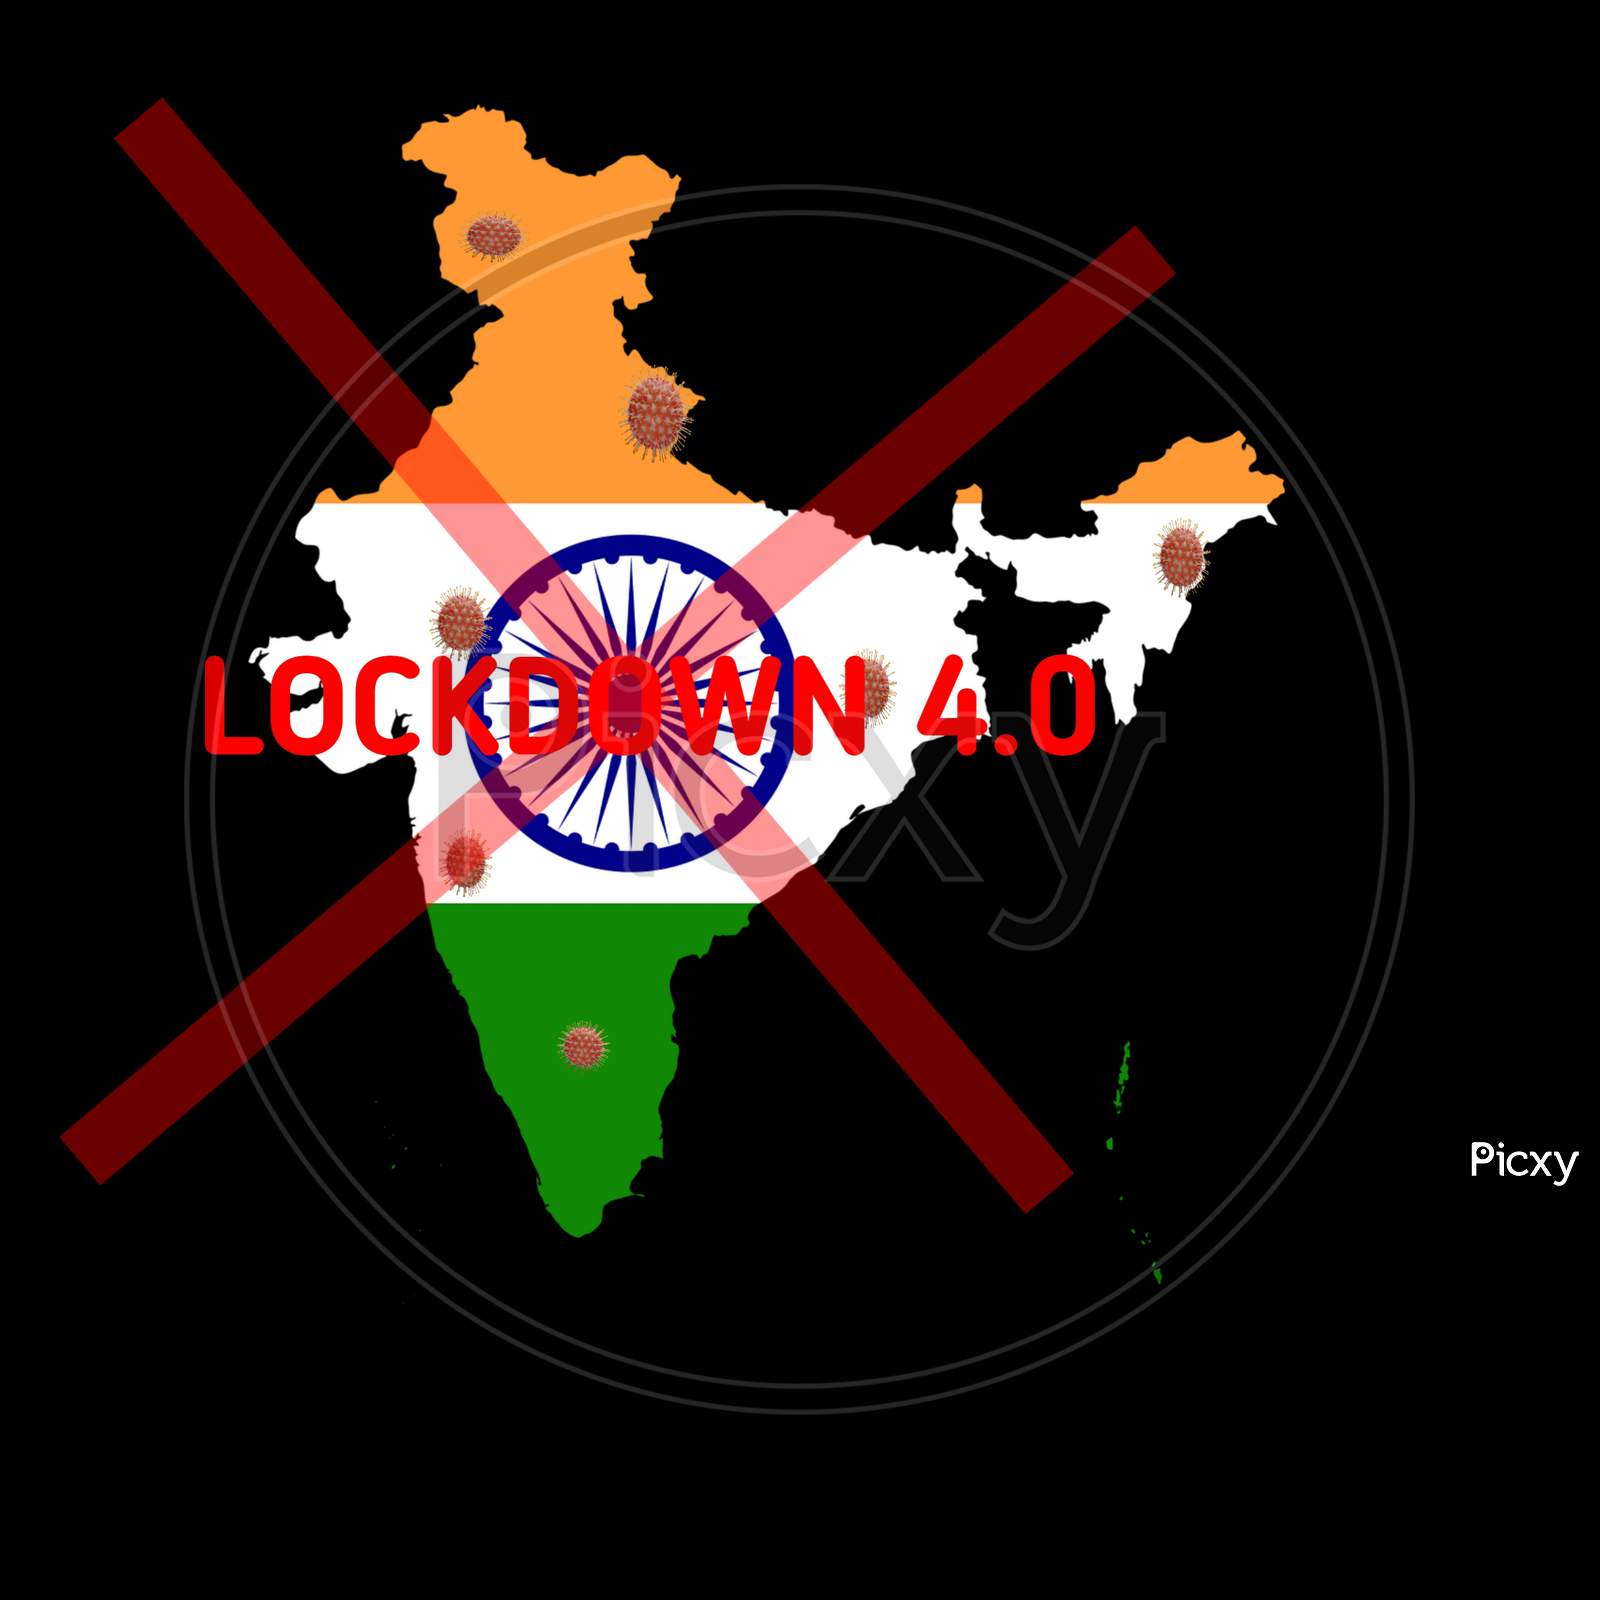 India lockdown due to coronavirus